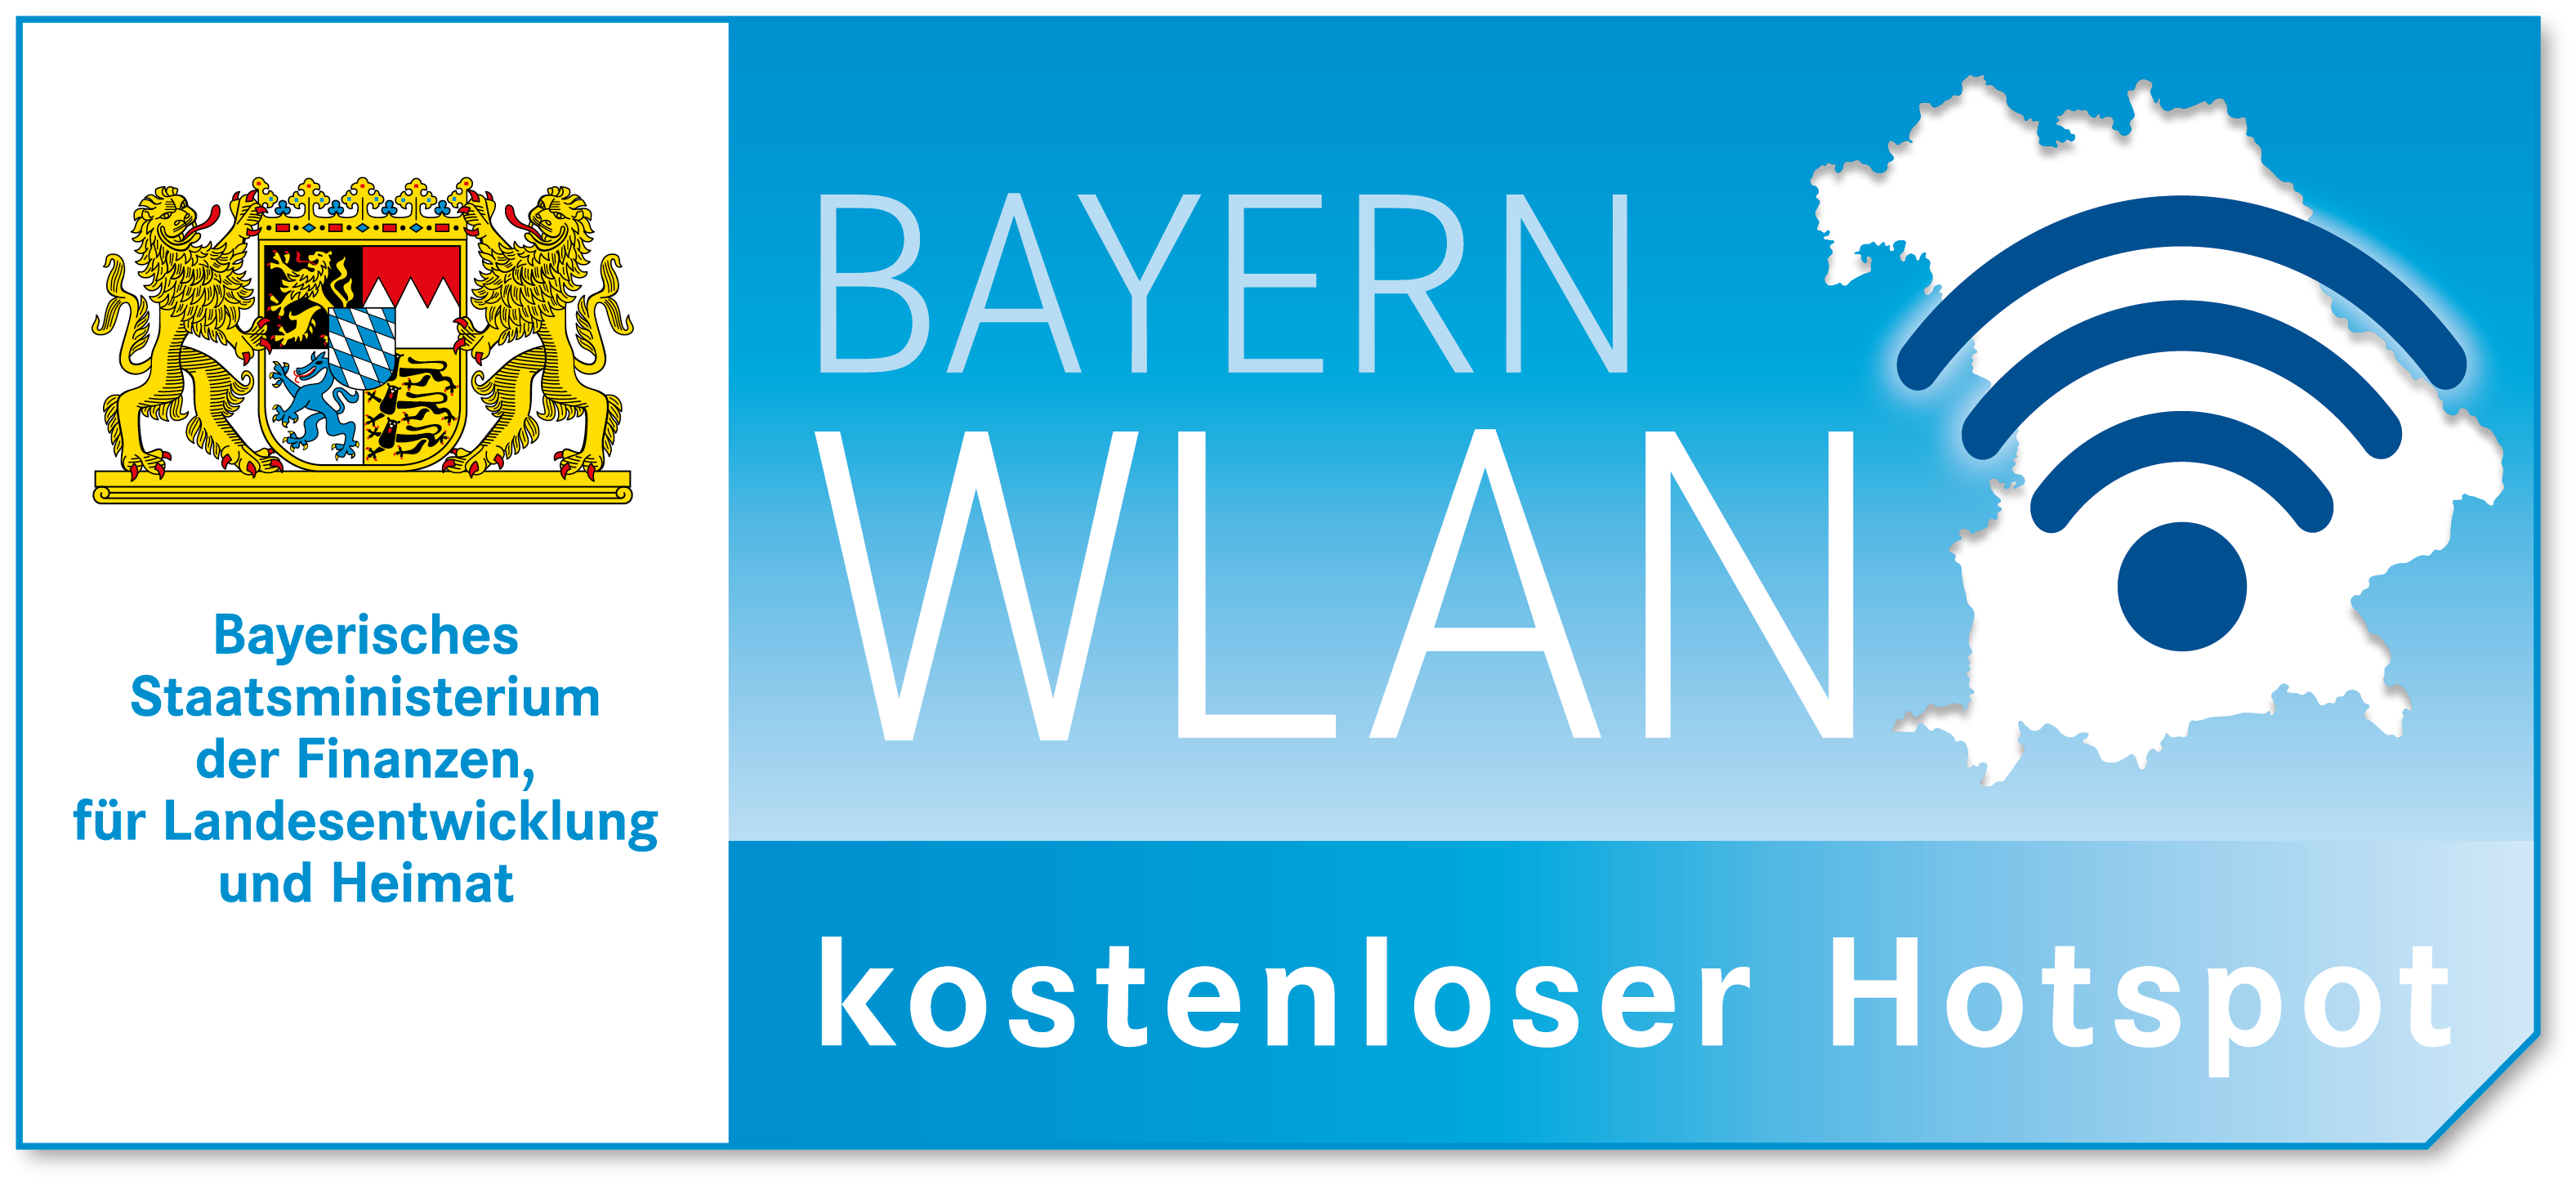 BayernWlan